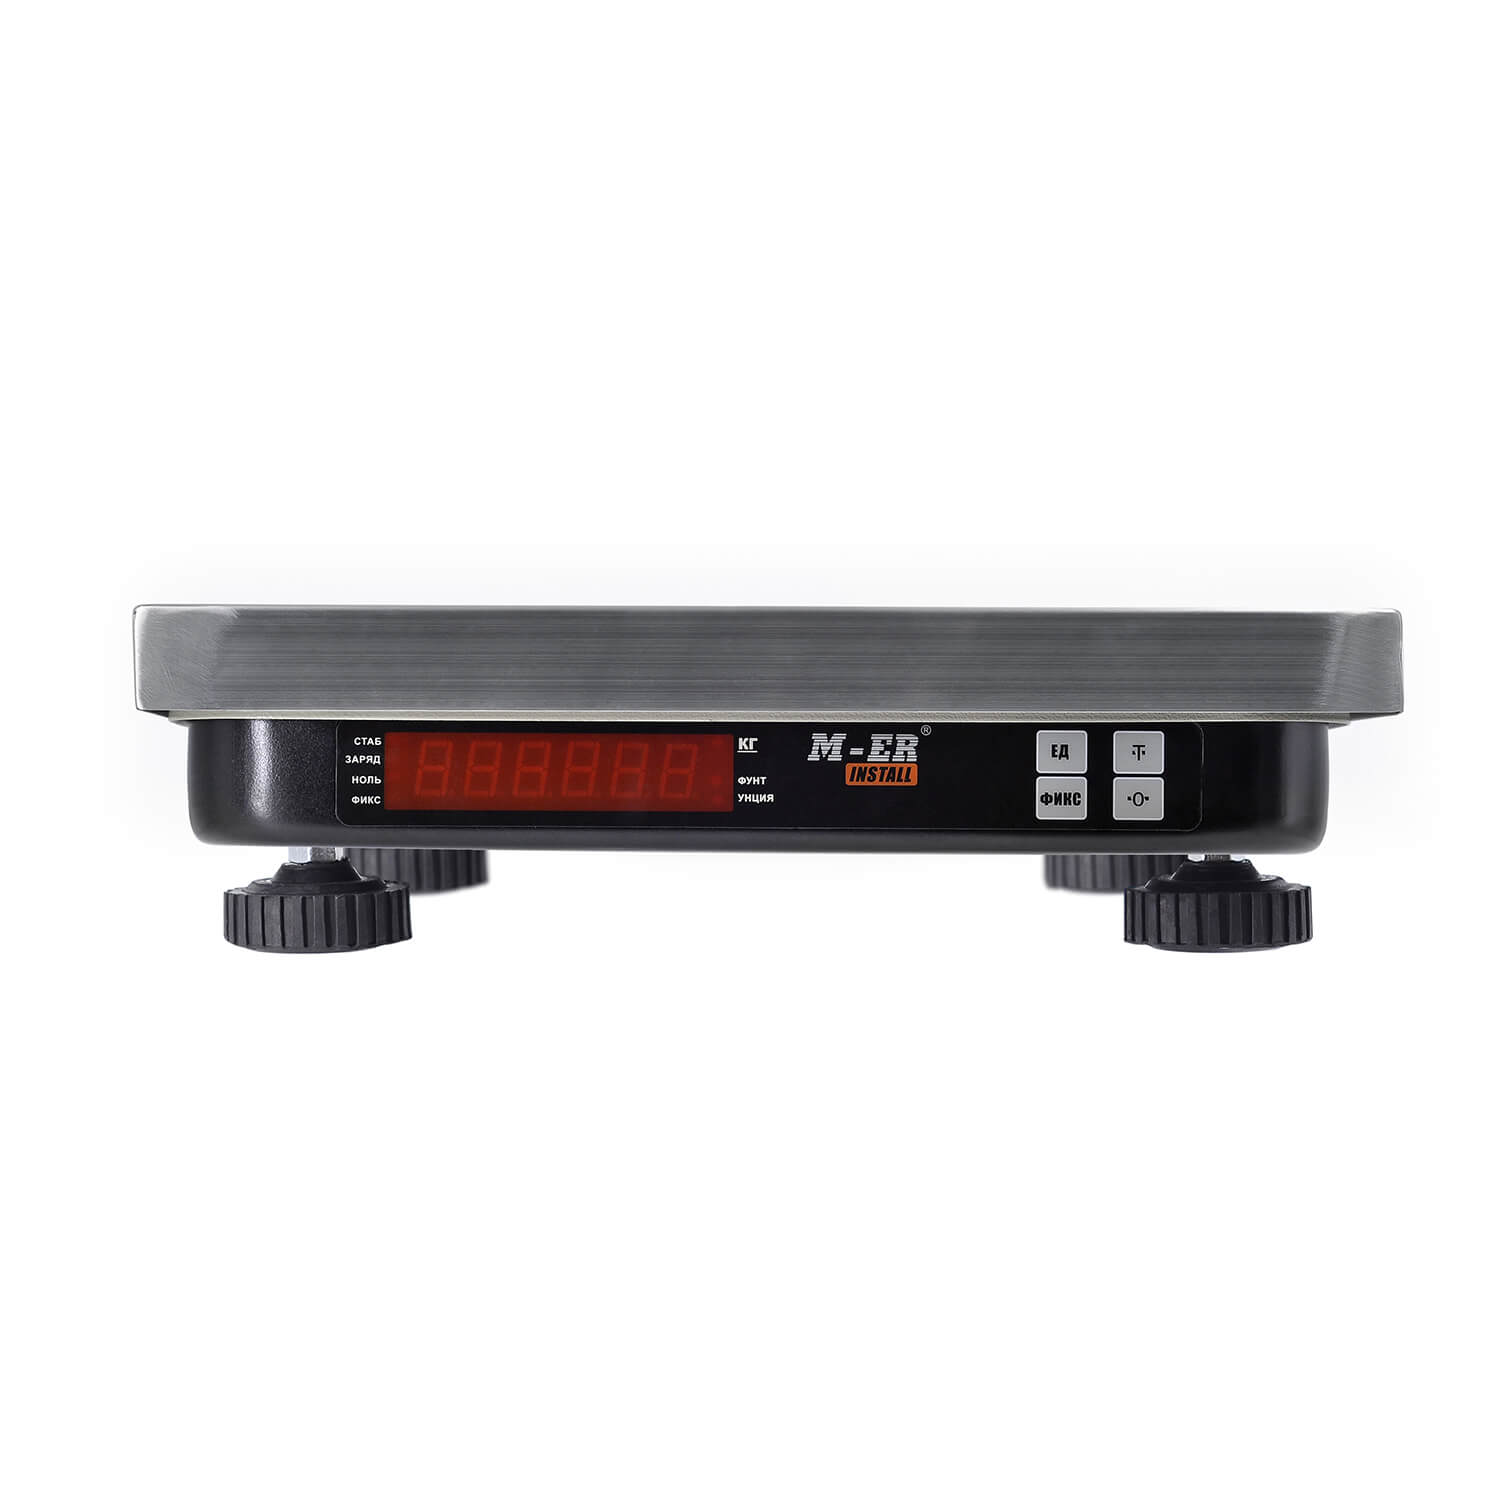 Фасовочные настольные весы M-ER 221 F-15.2 "Install" RS-232 MERTECH 3231 Весы #2